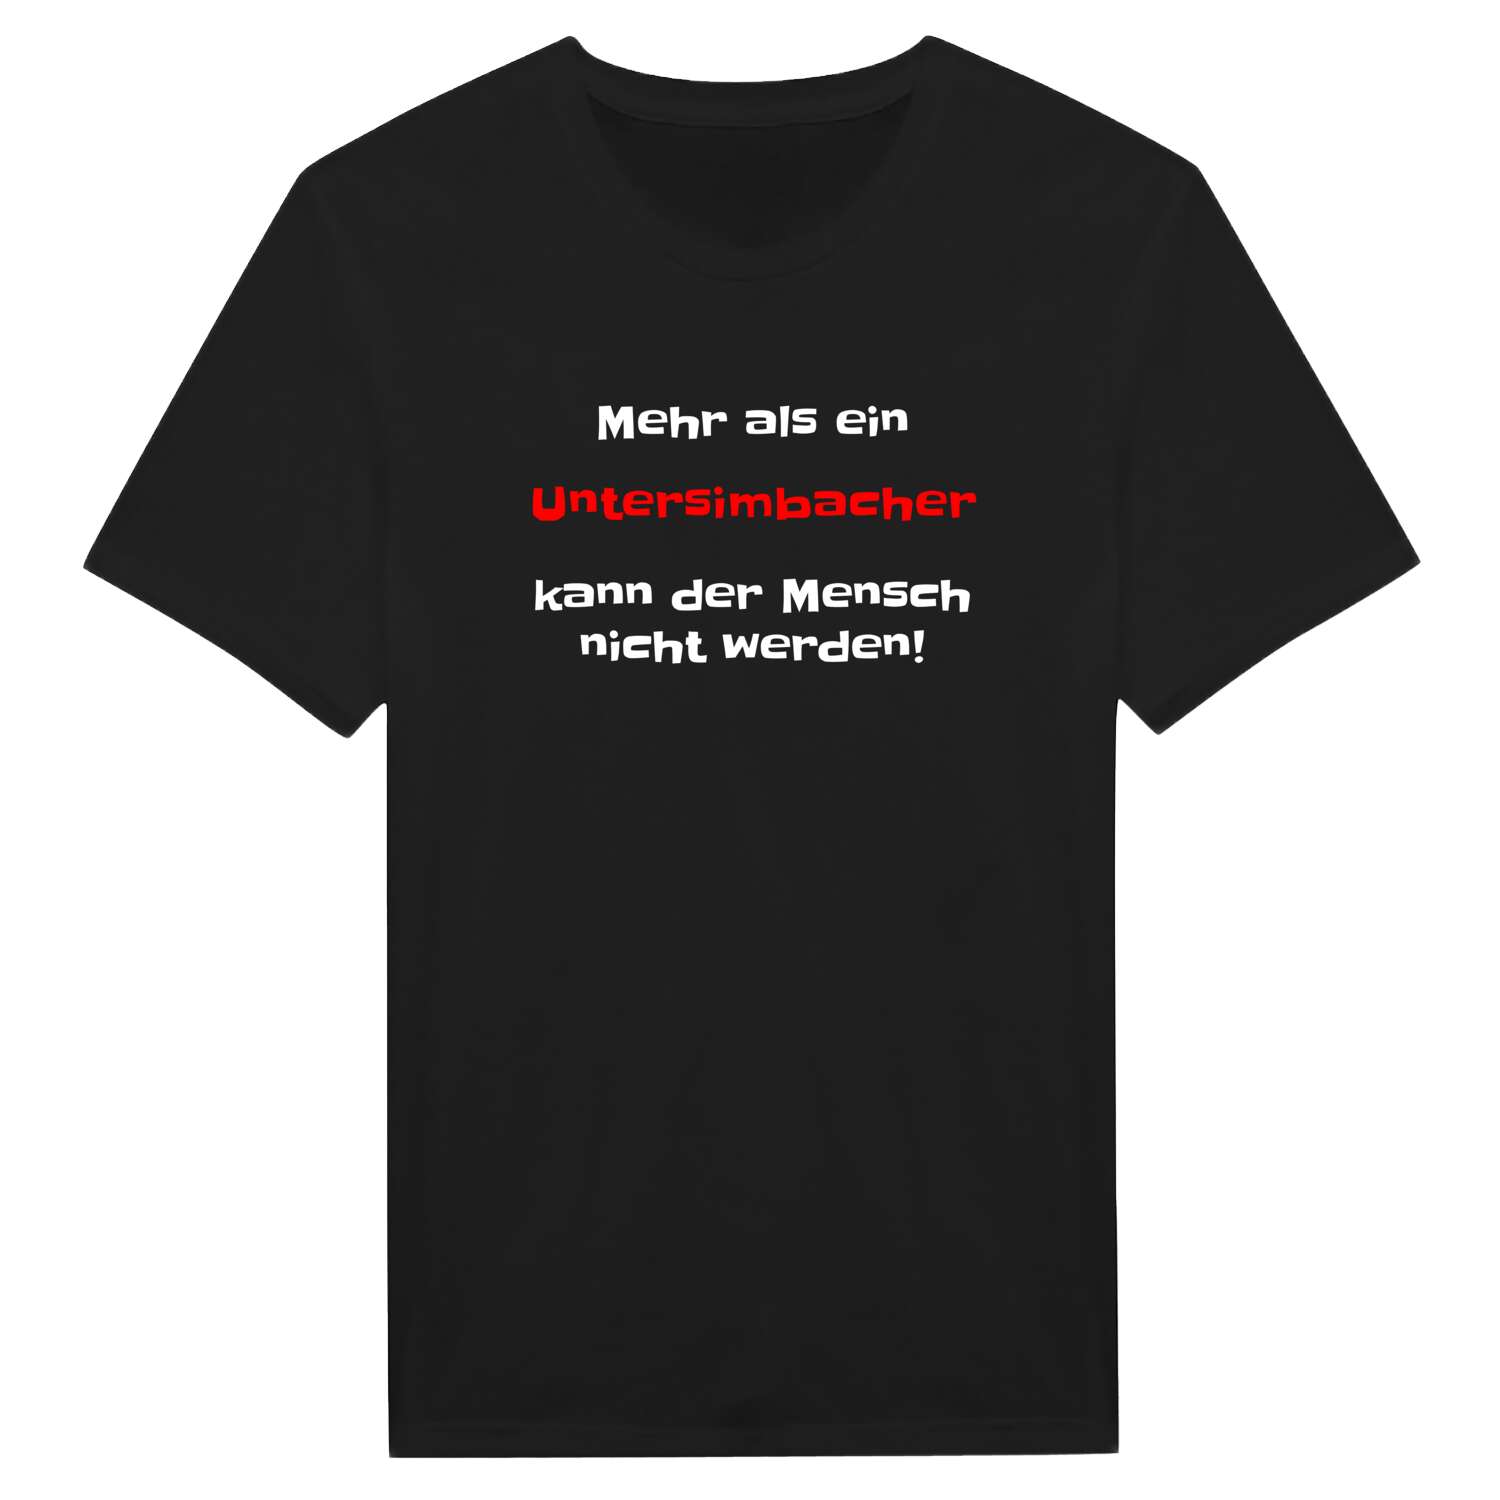 Untersimbach T-Shirt »Mehr als ein«